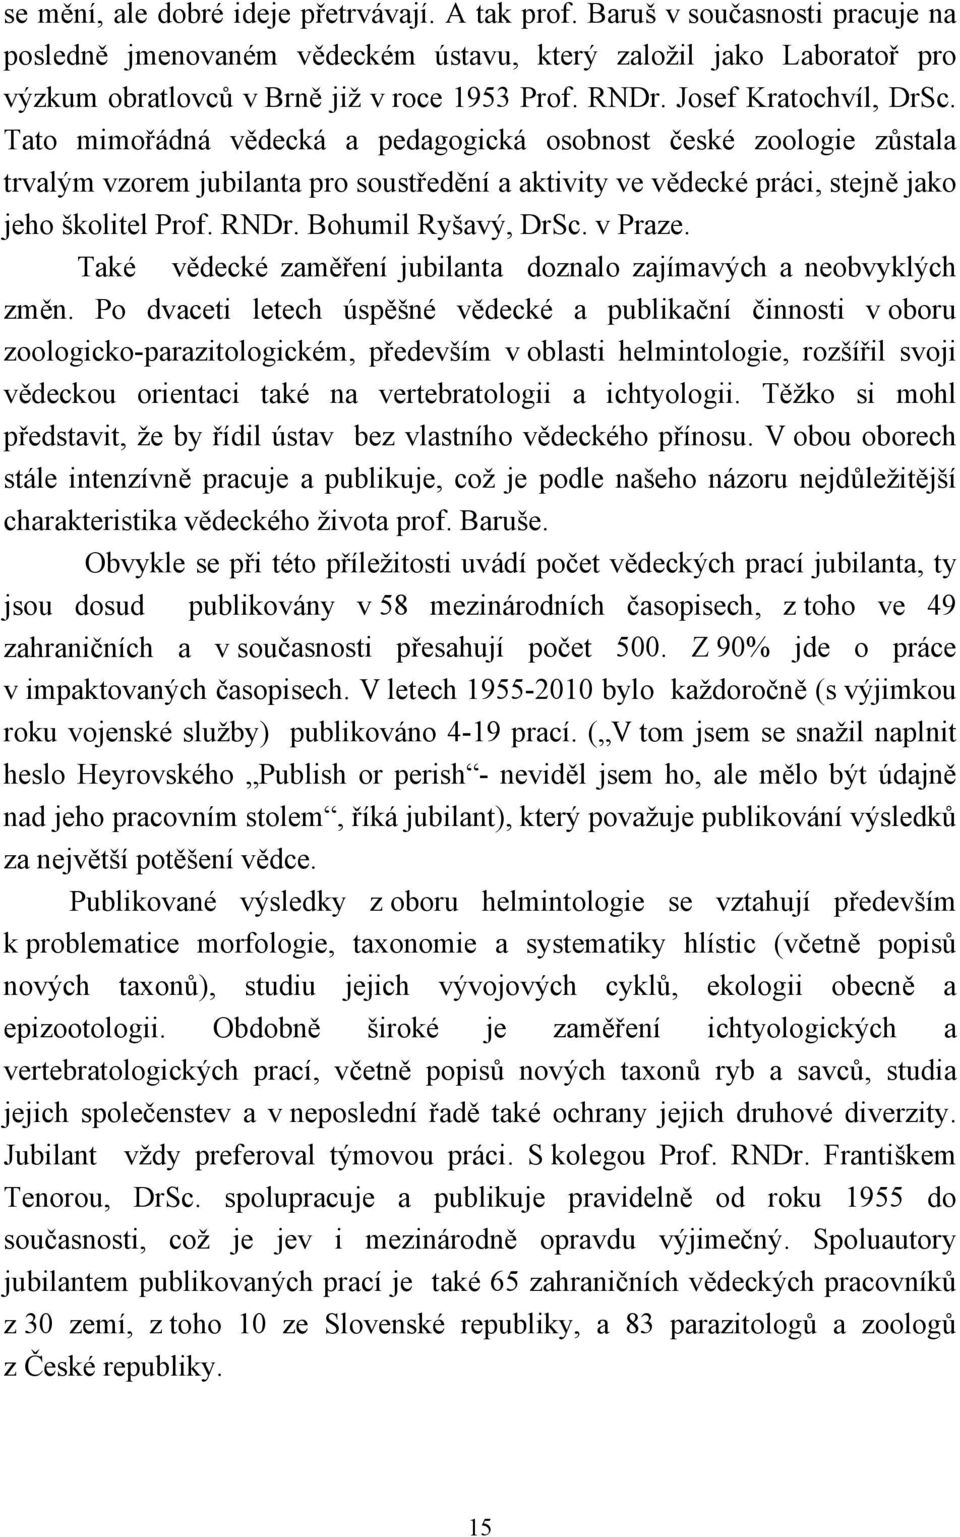 RNDr. Bohumil Ryšavý, DrSc. v Praze. Také vědecké zaměření jubilanta doznalo zajímavých a neobvyklých změn.